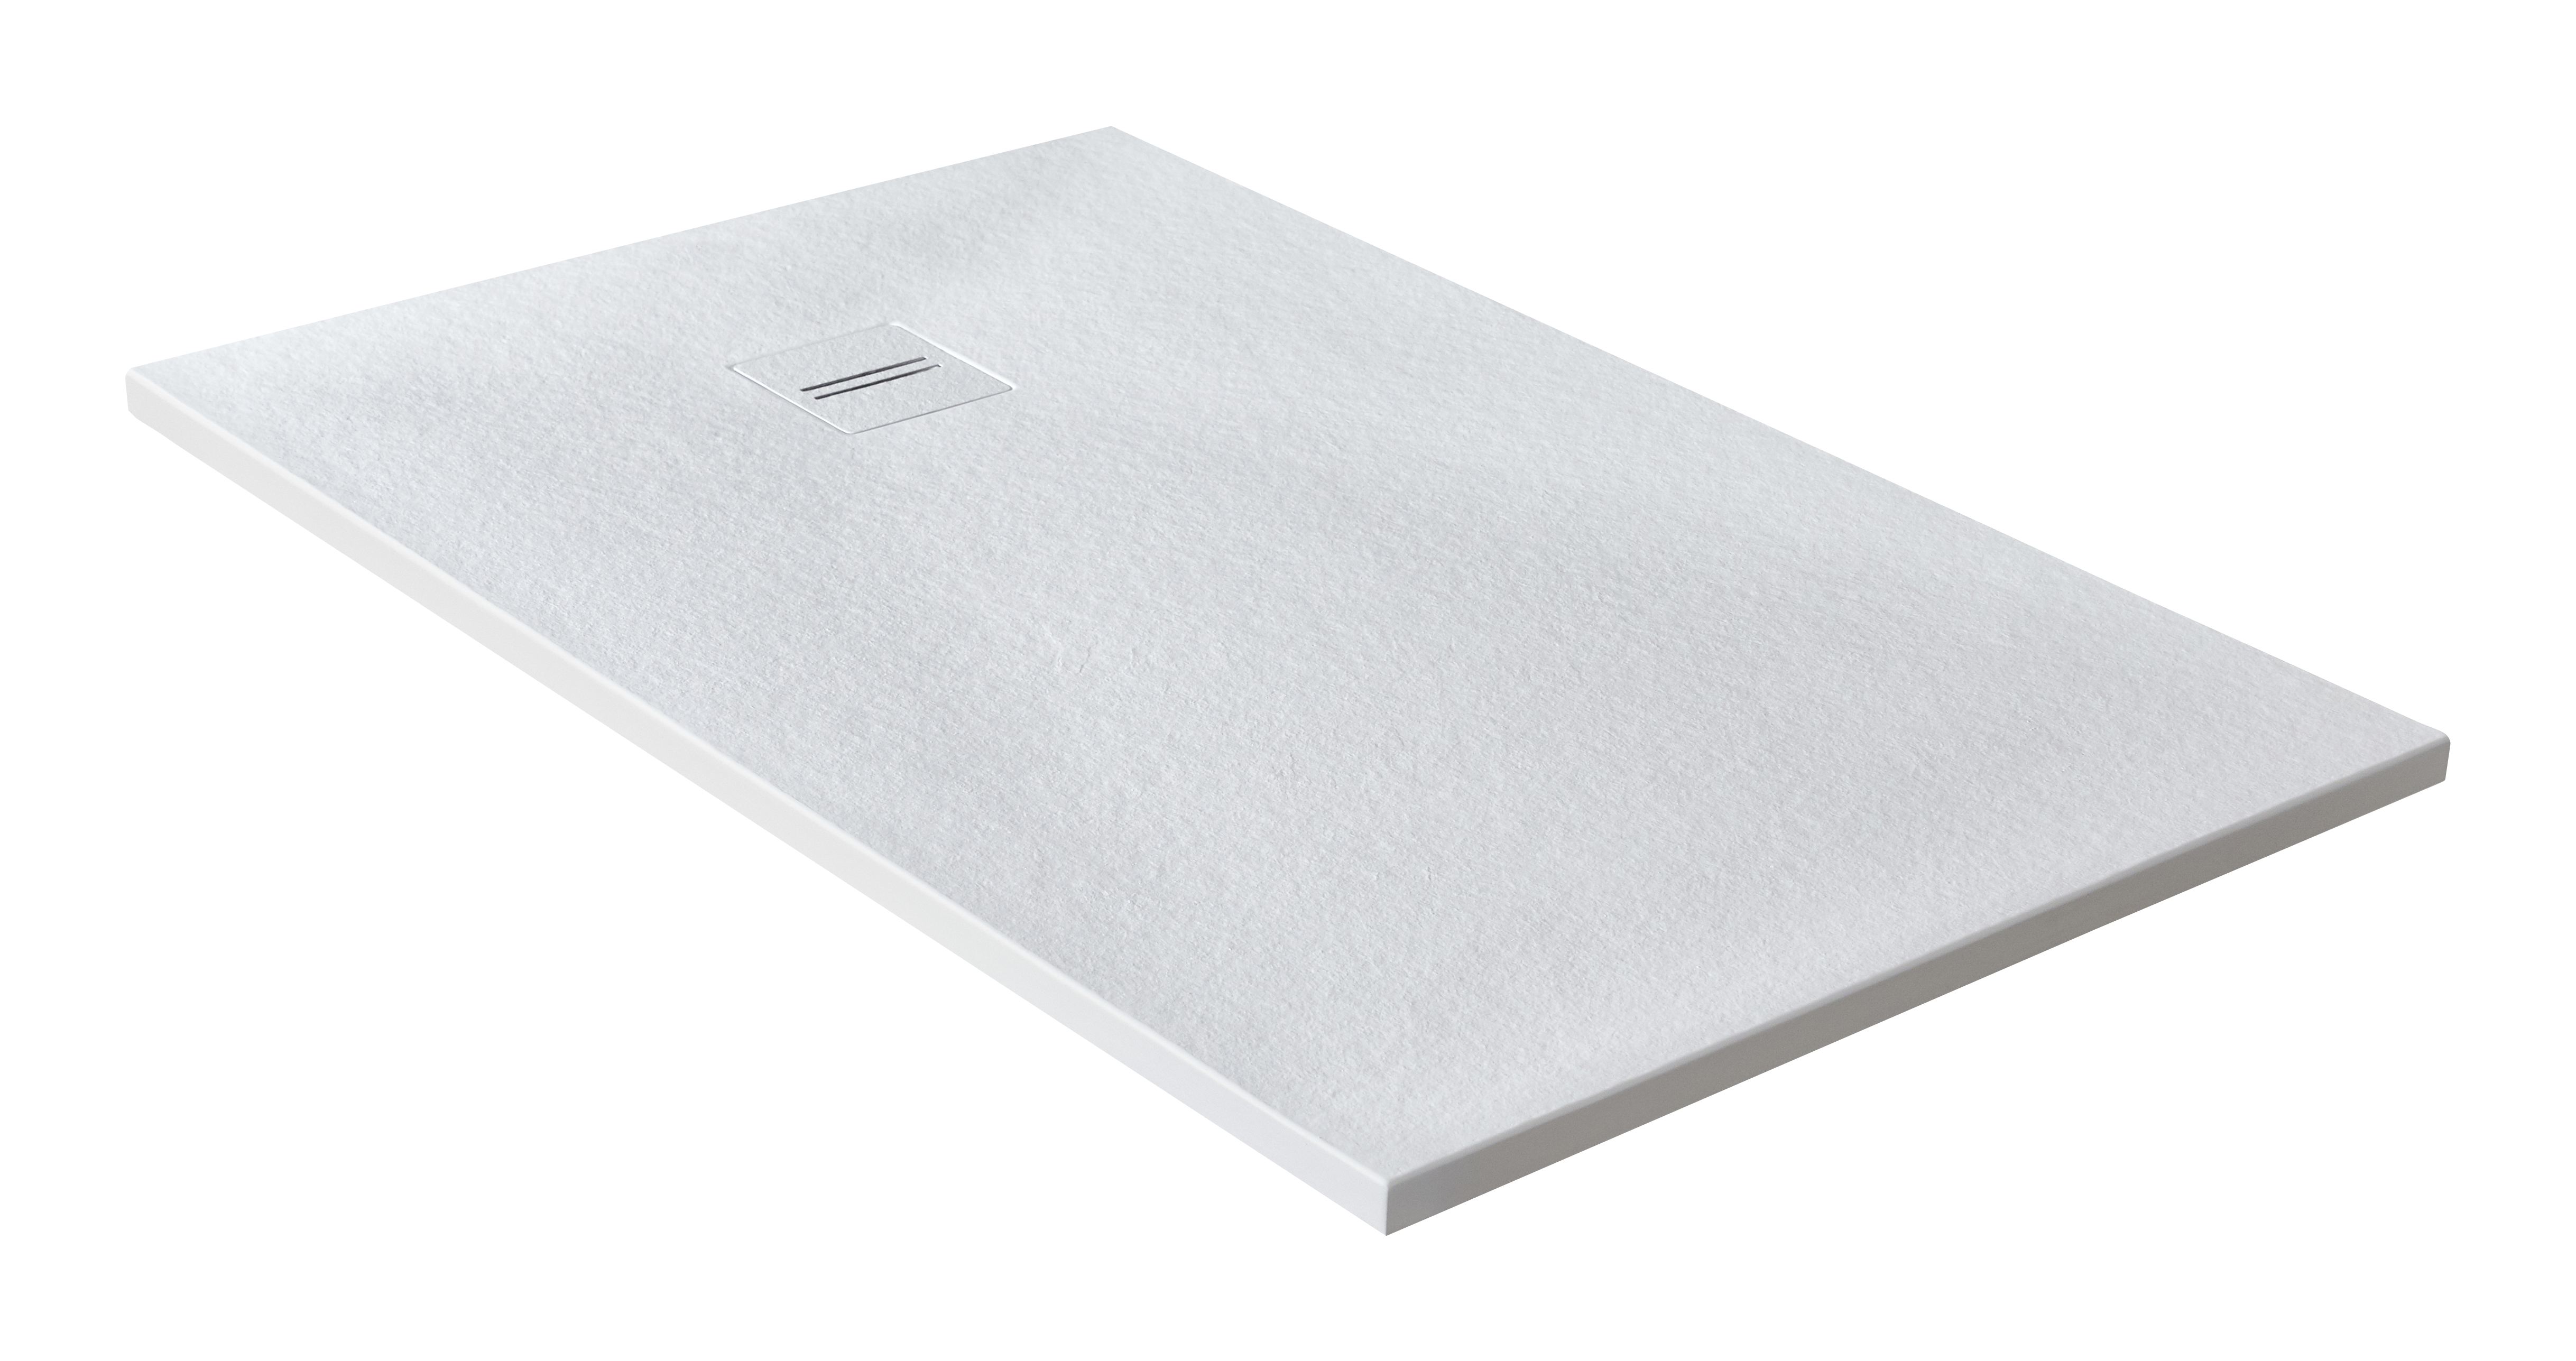 Plato de ducha cosmos 120x75 cm blanco